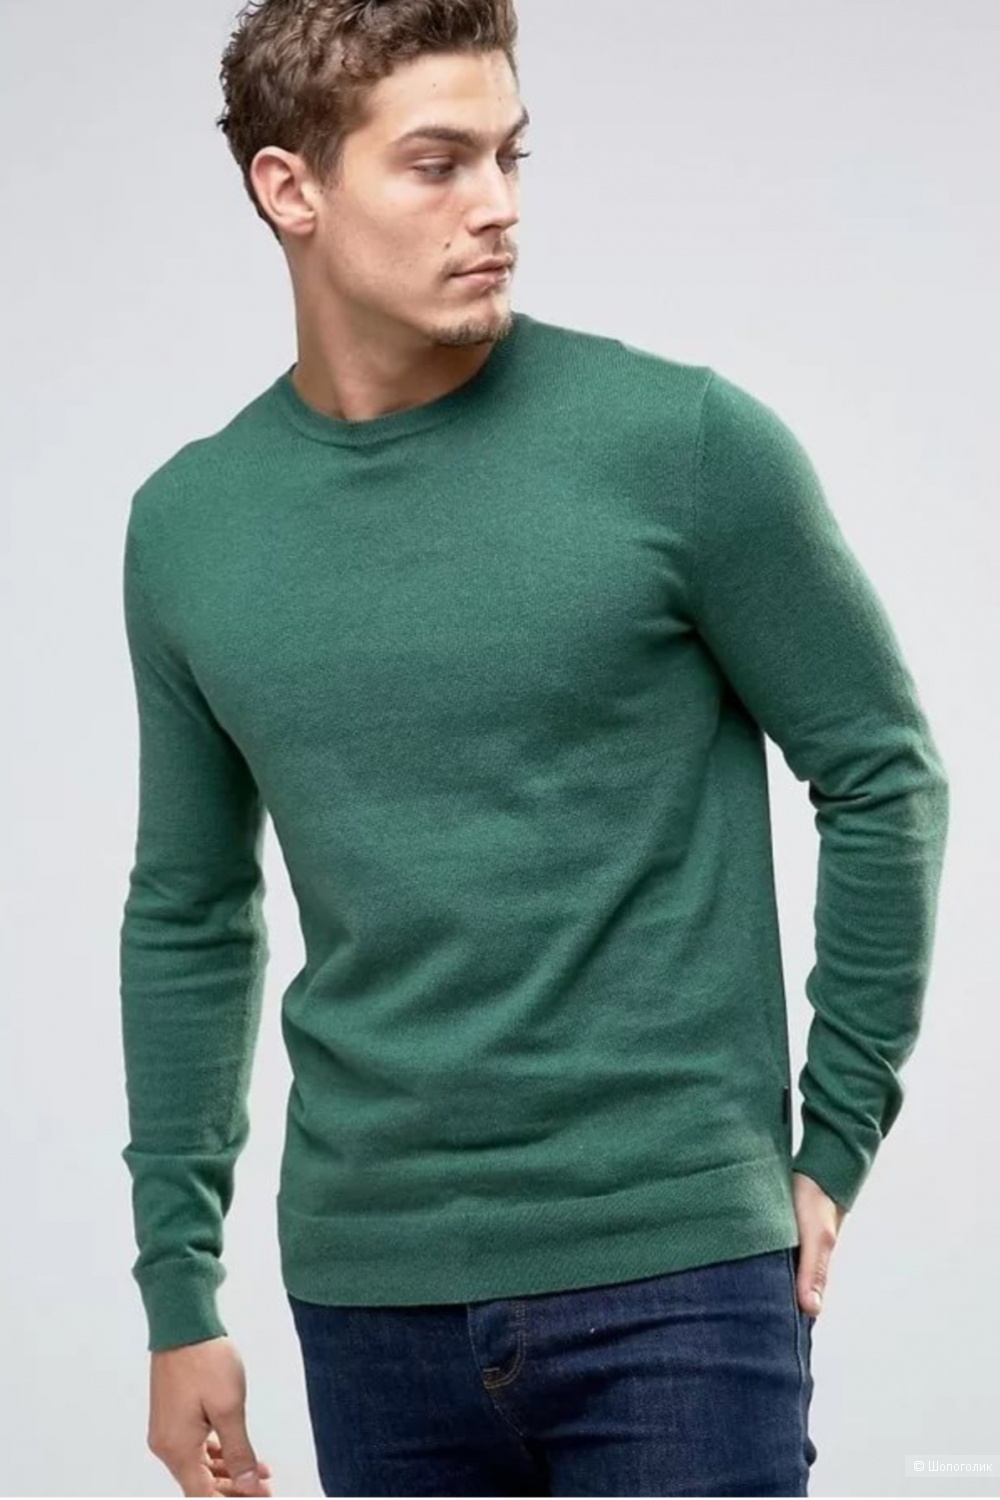 Зеленые свитеры мужские. Джемпер мужской кашемир Esprit. Джемпер Zolla мужской зеленый. Henry Cottons свитер мужской. Зеленый джемпер мужской.